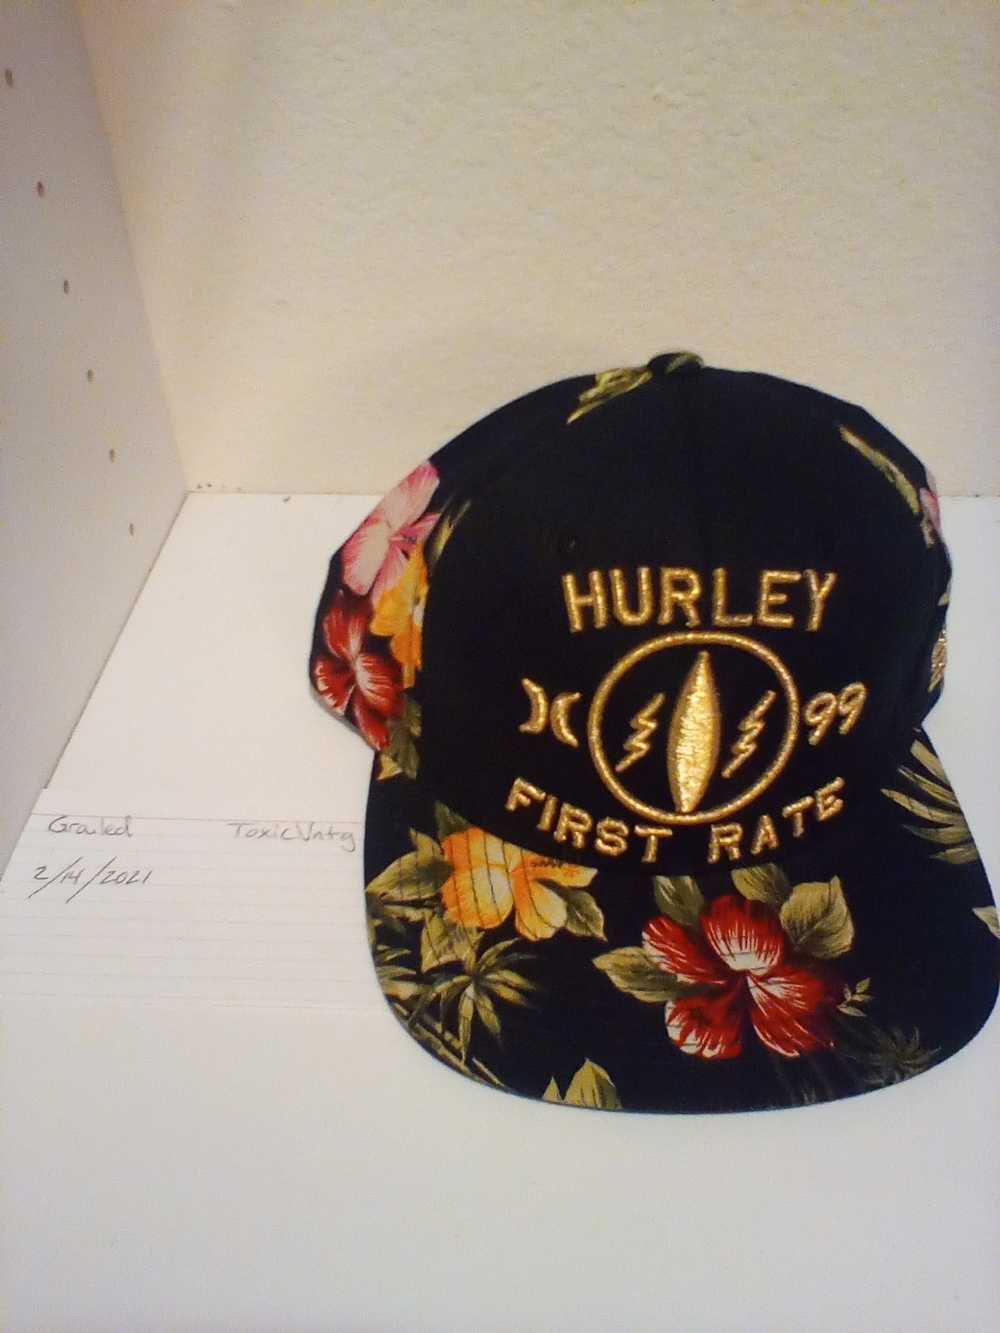 Hurley Hurley aloha - image 1